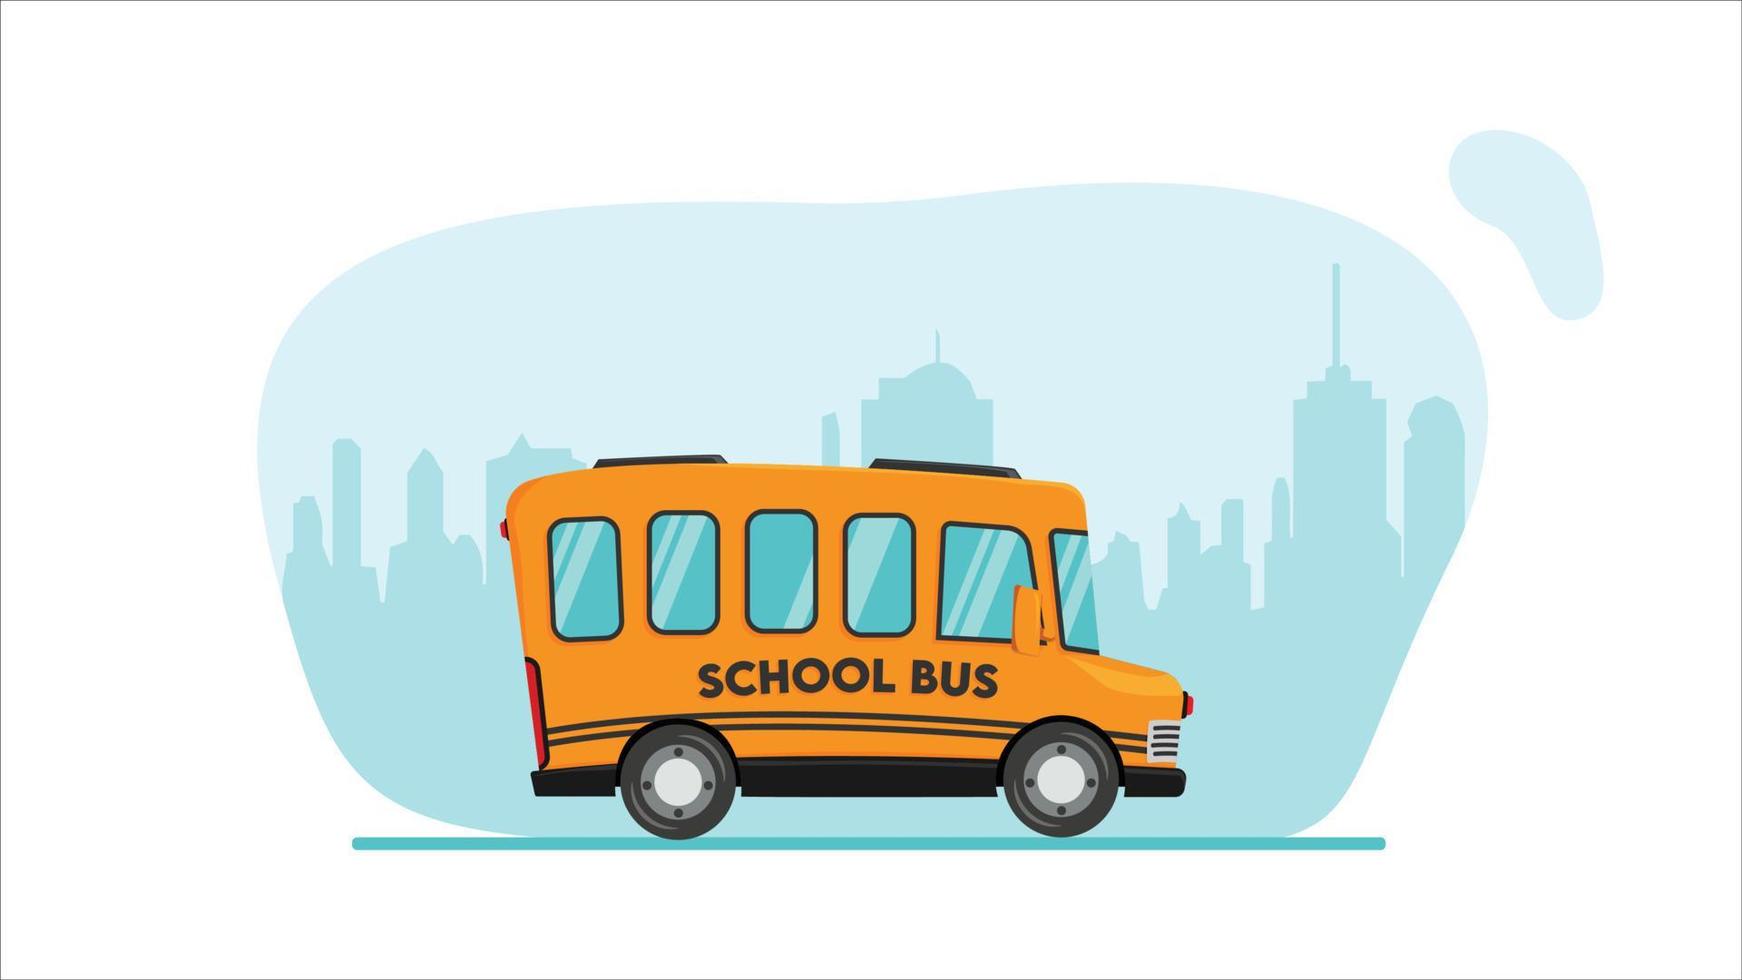 Elegant School Bus Illustration vector